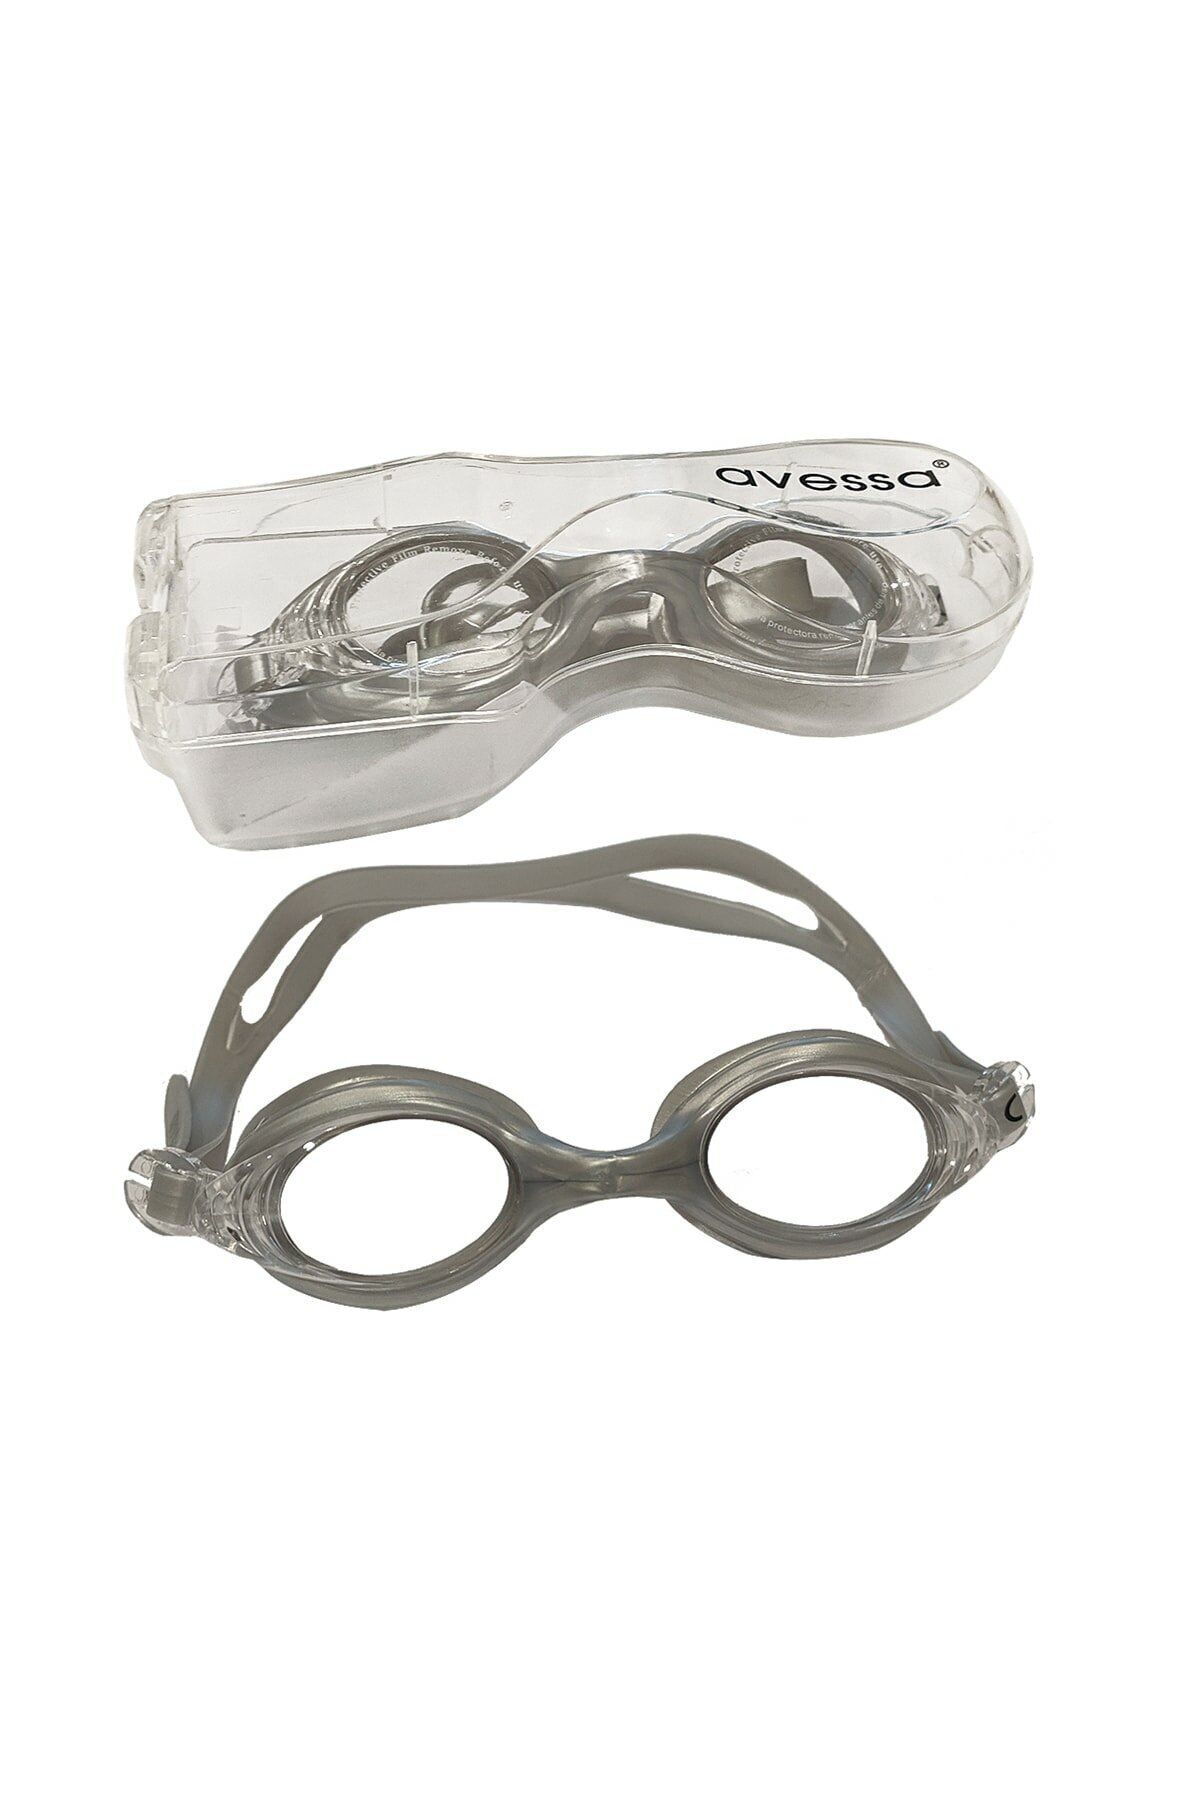 Avessa Yetişkin Yüzücü Gözlüğü - Deniz Gözlüğü Havuz Gözlüğü - Kadın Erkek  Büyük Gözlük Gözlüğü